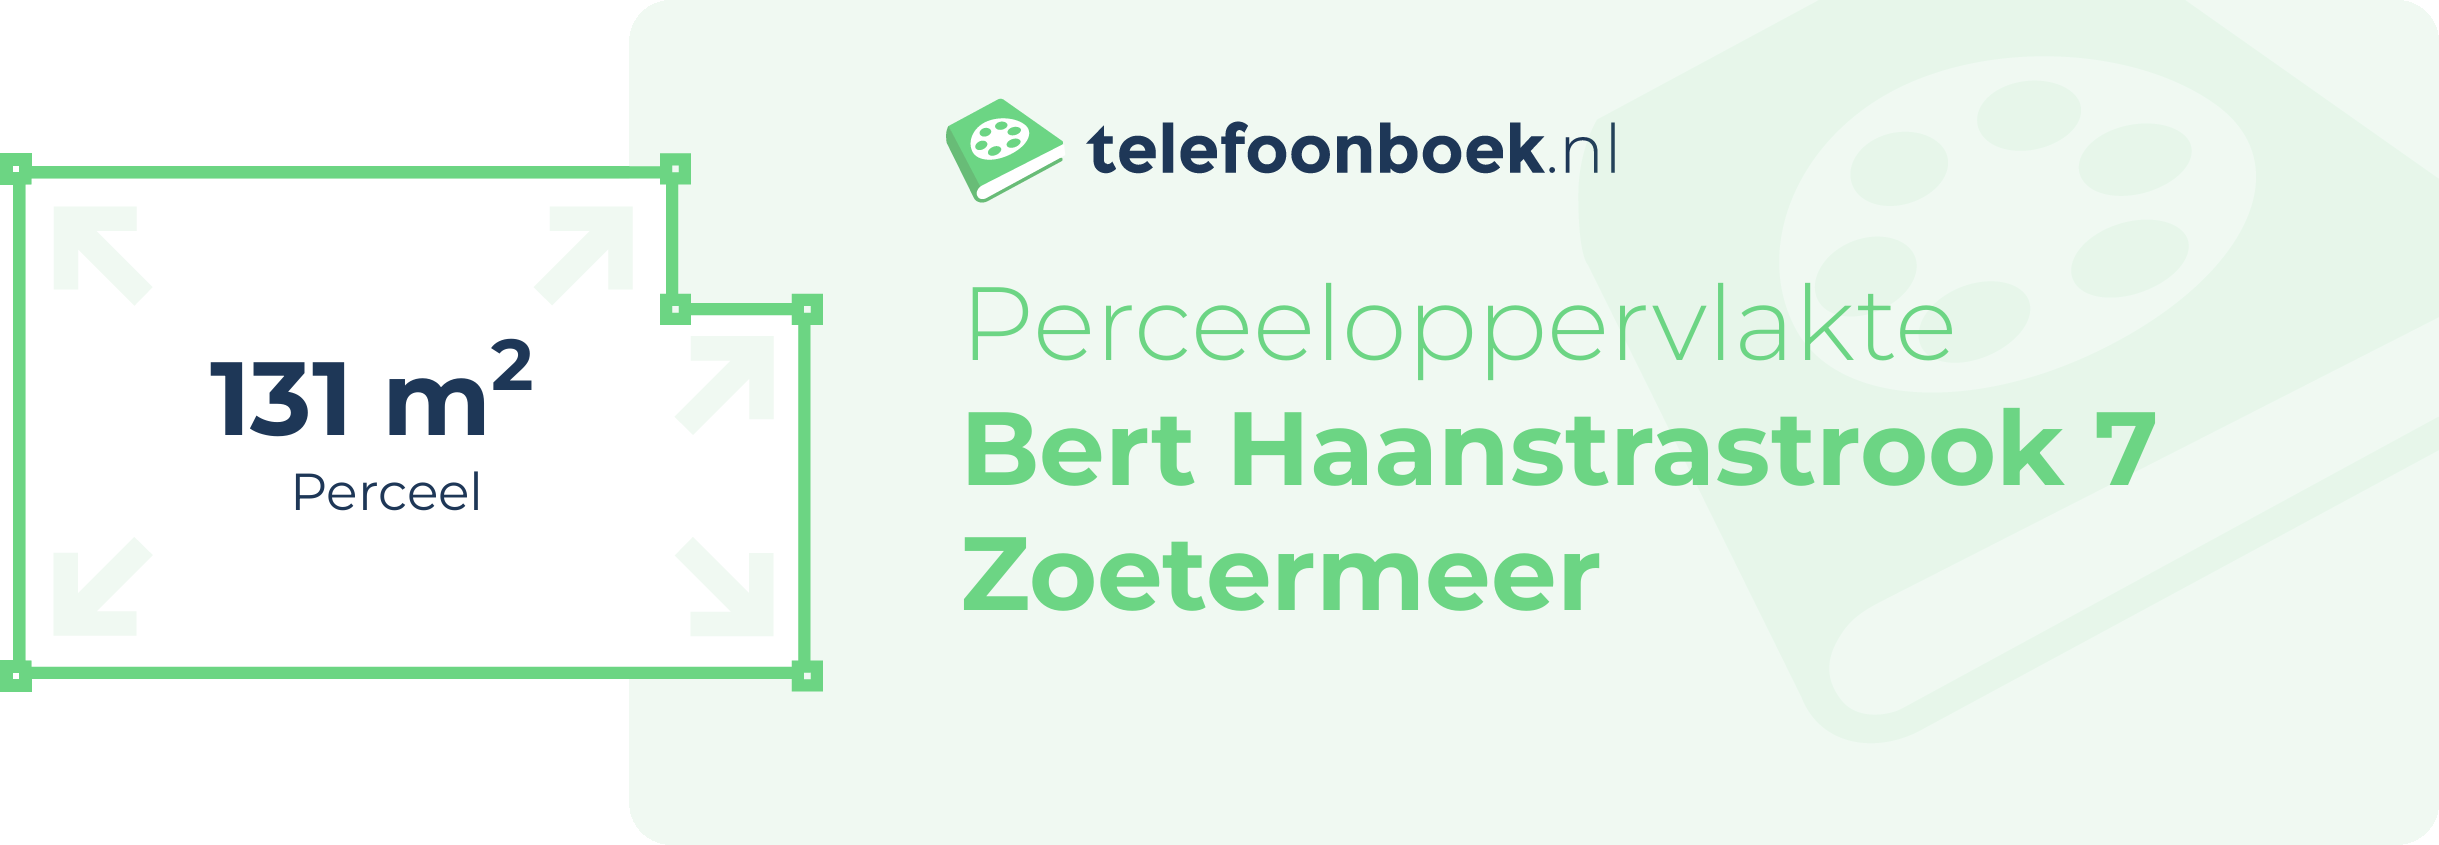 Perceeloppervlakte Bert Haanstrastrook 7 Zoetermeer